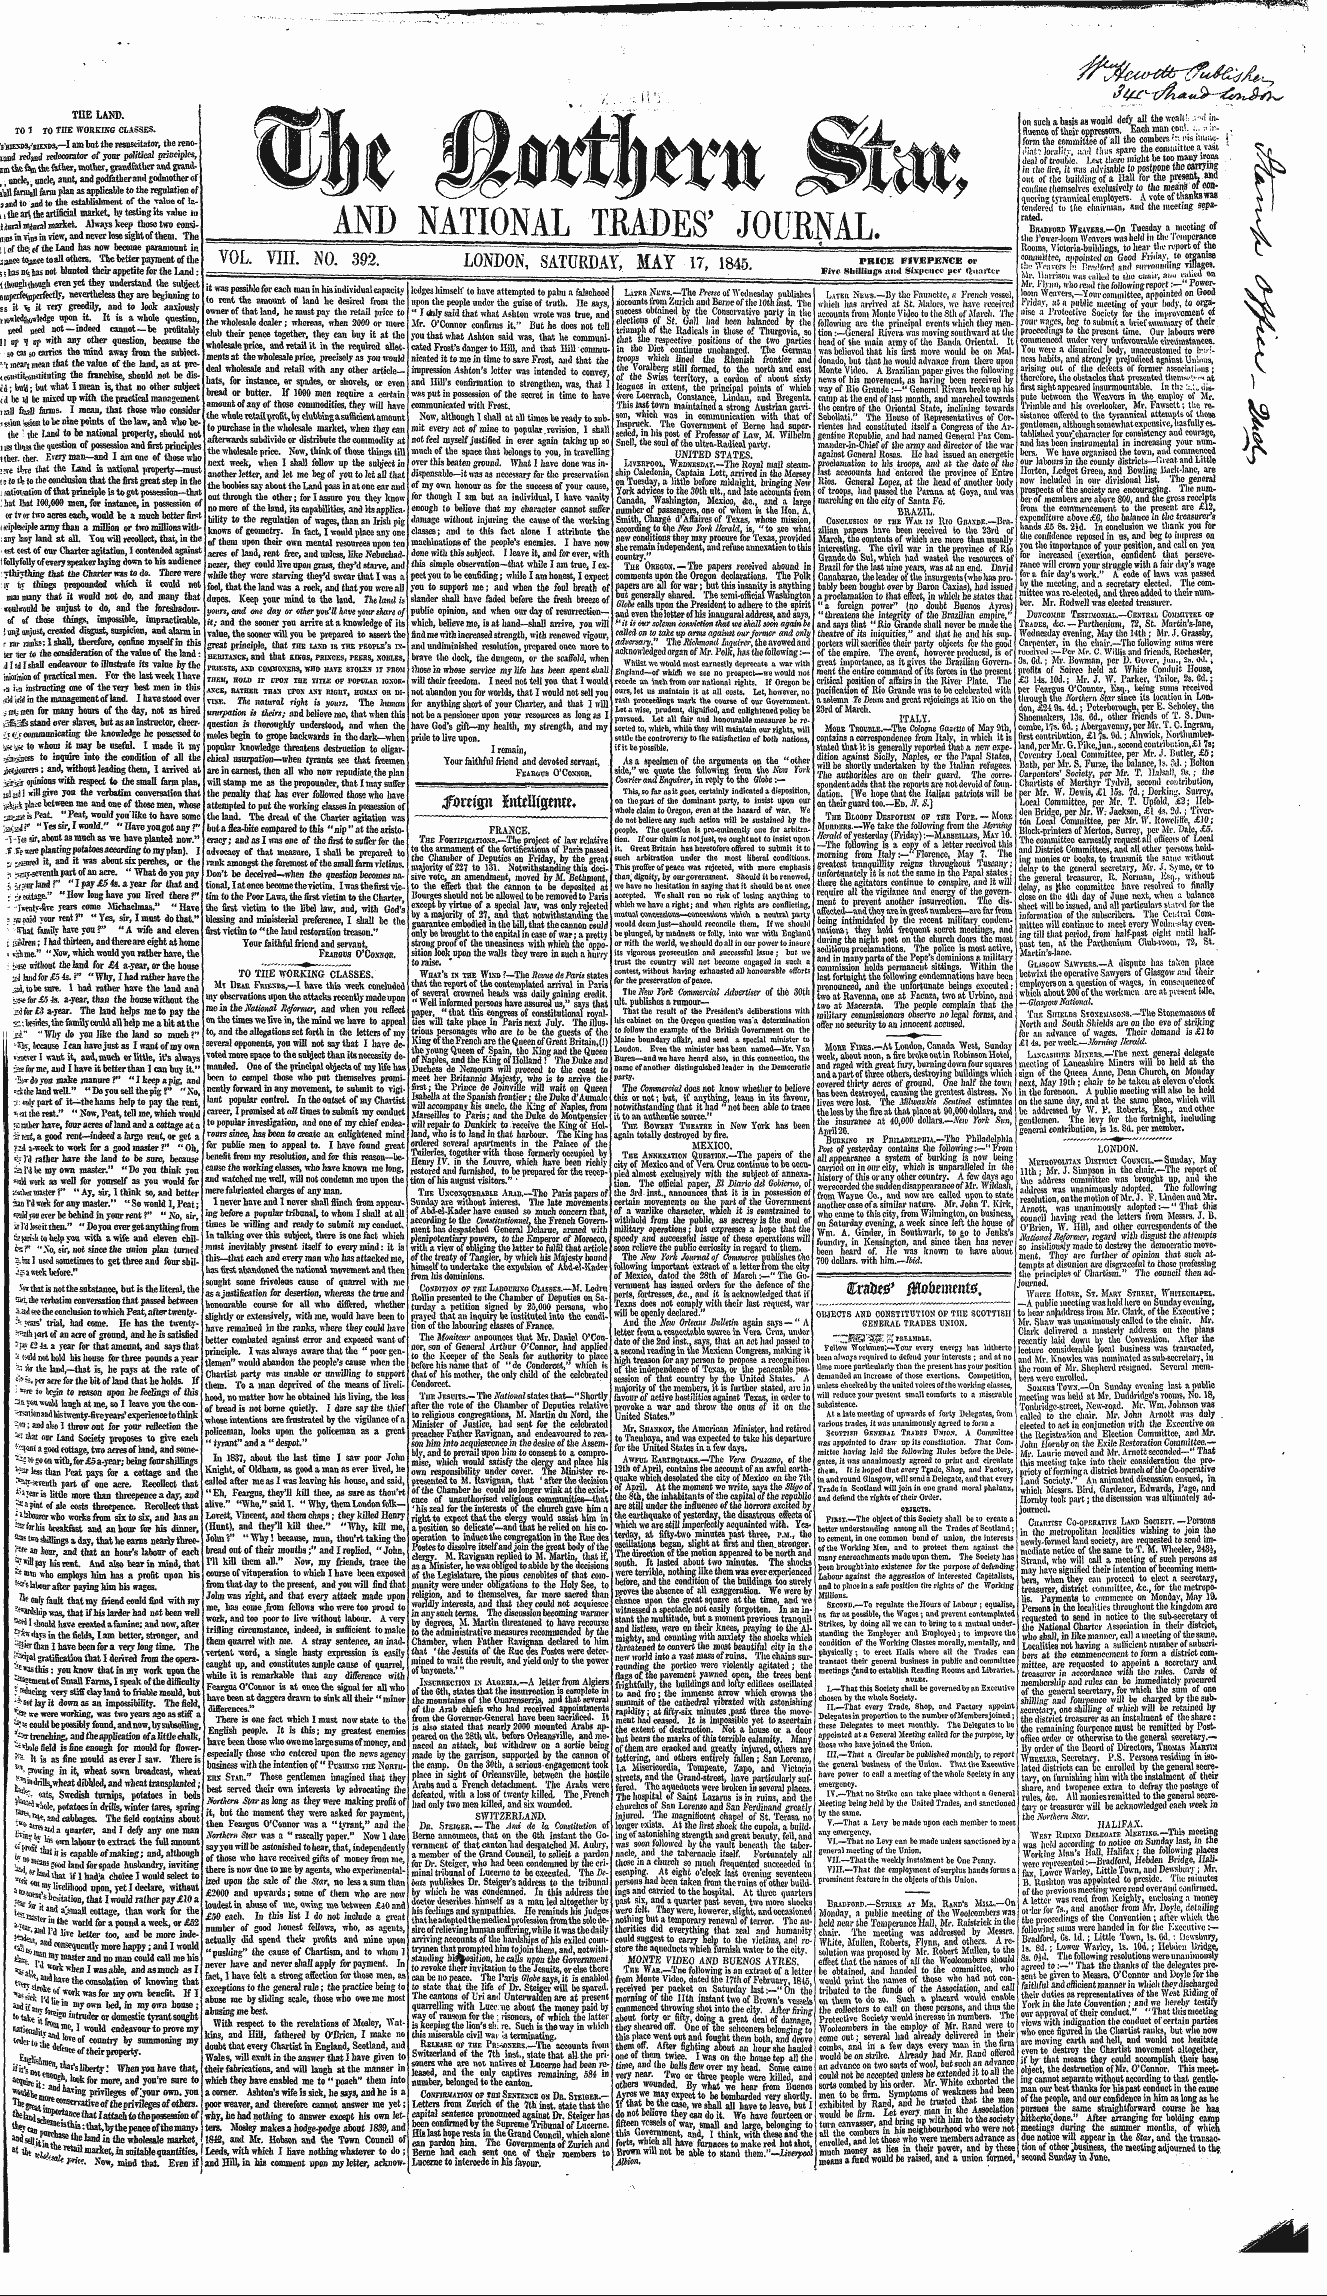 Northern Star (1837-1852): jS F Y, 2nd edition - Tfovtim Fa\Tm$Ttat.